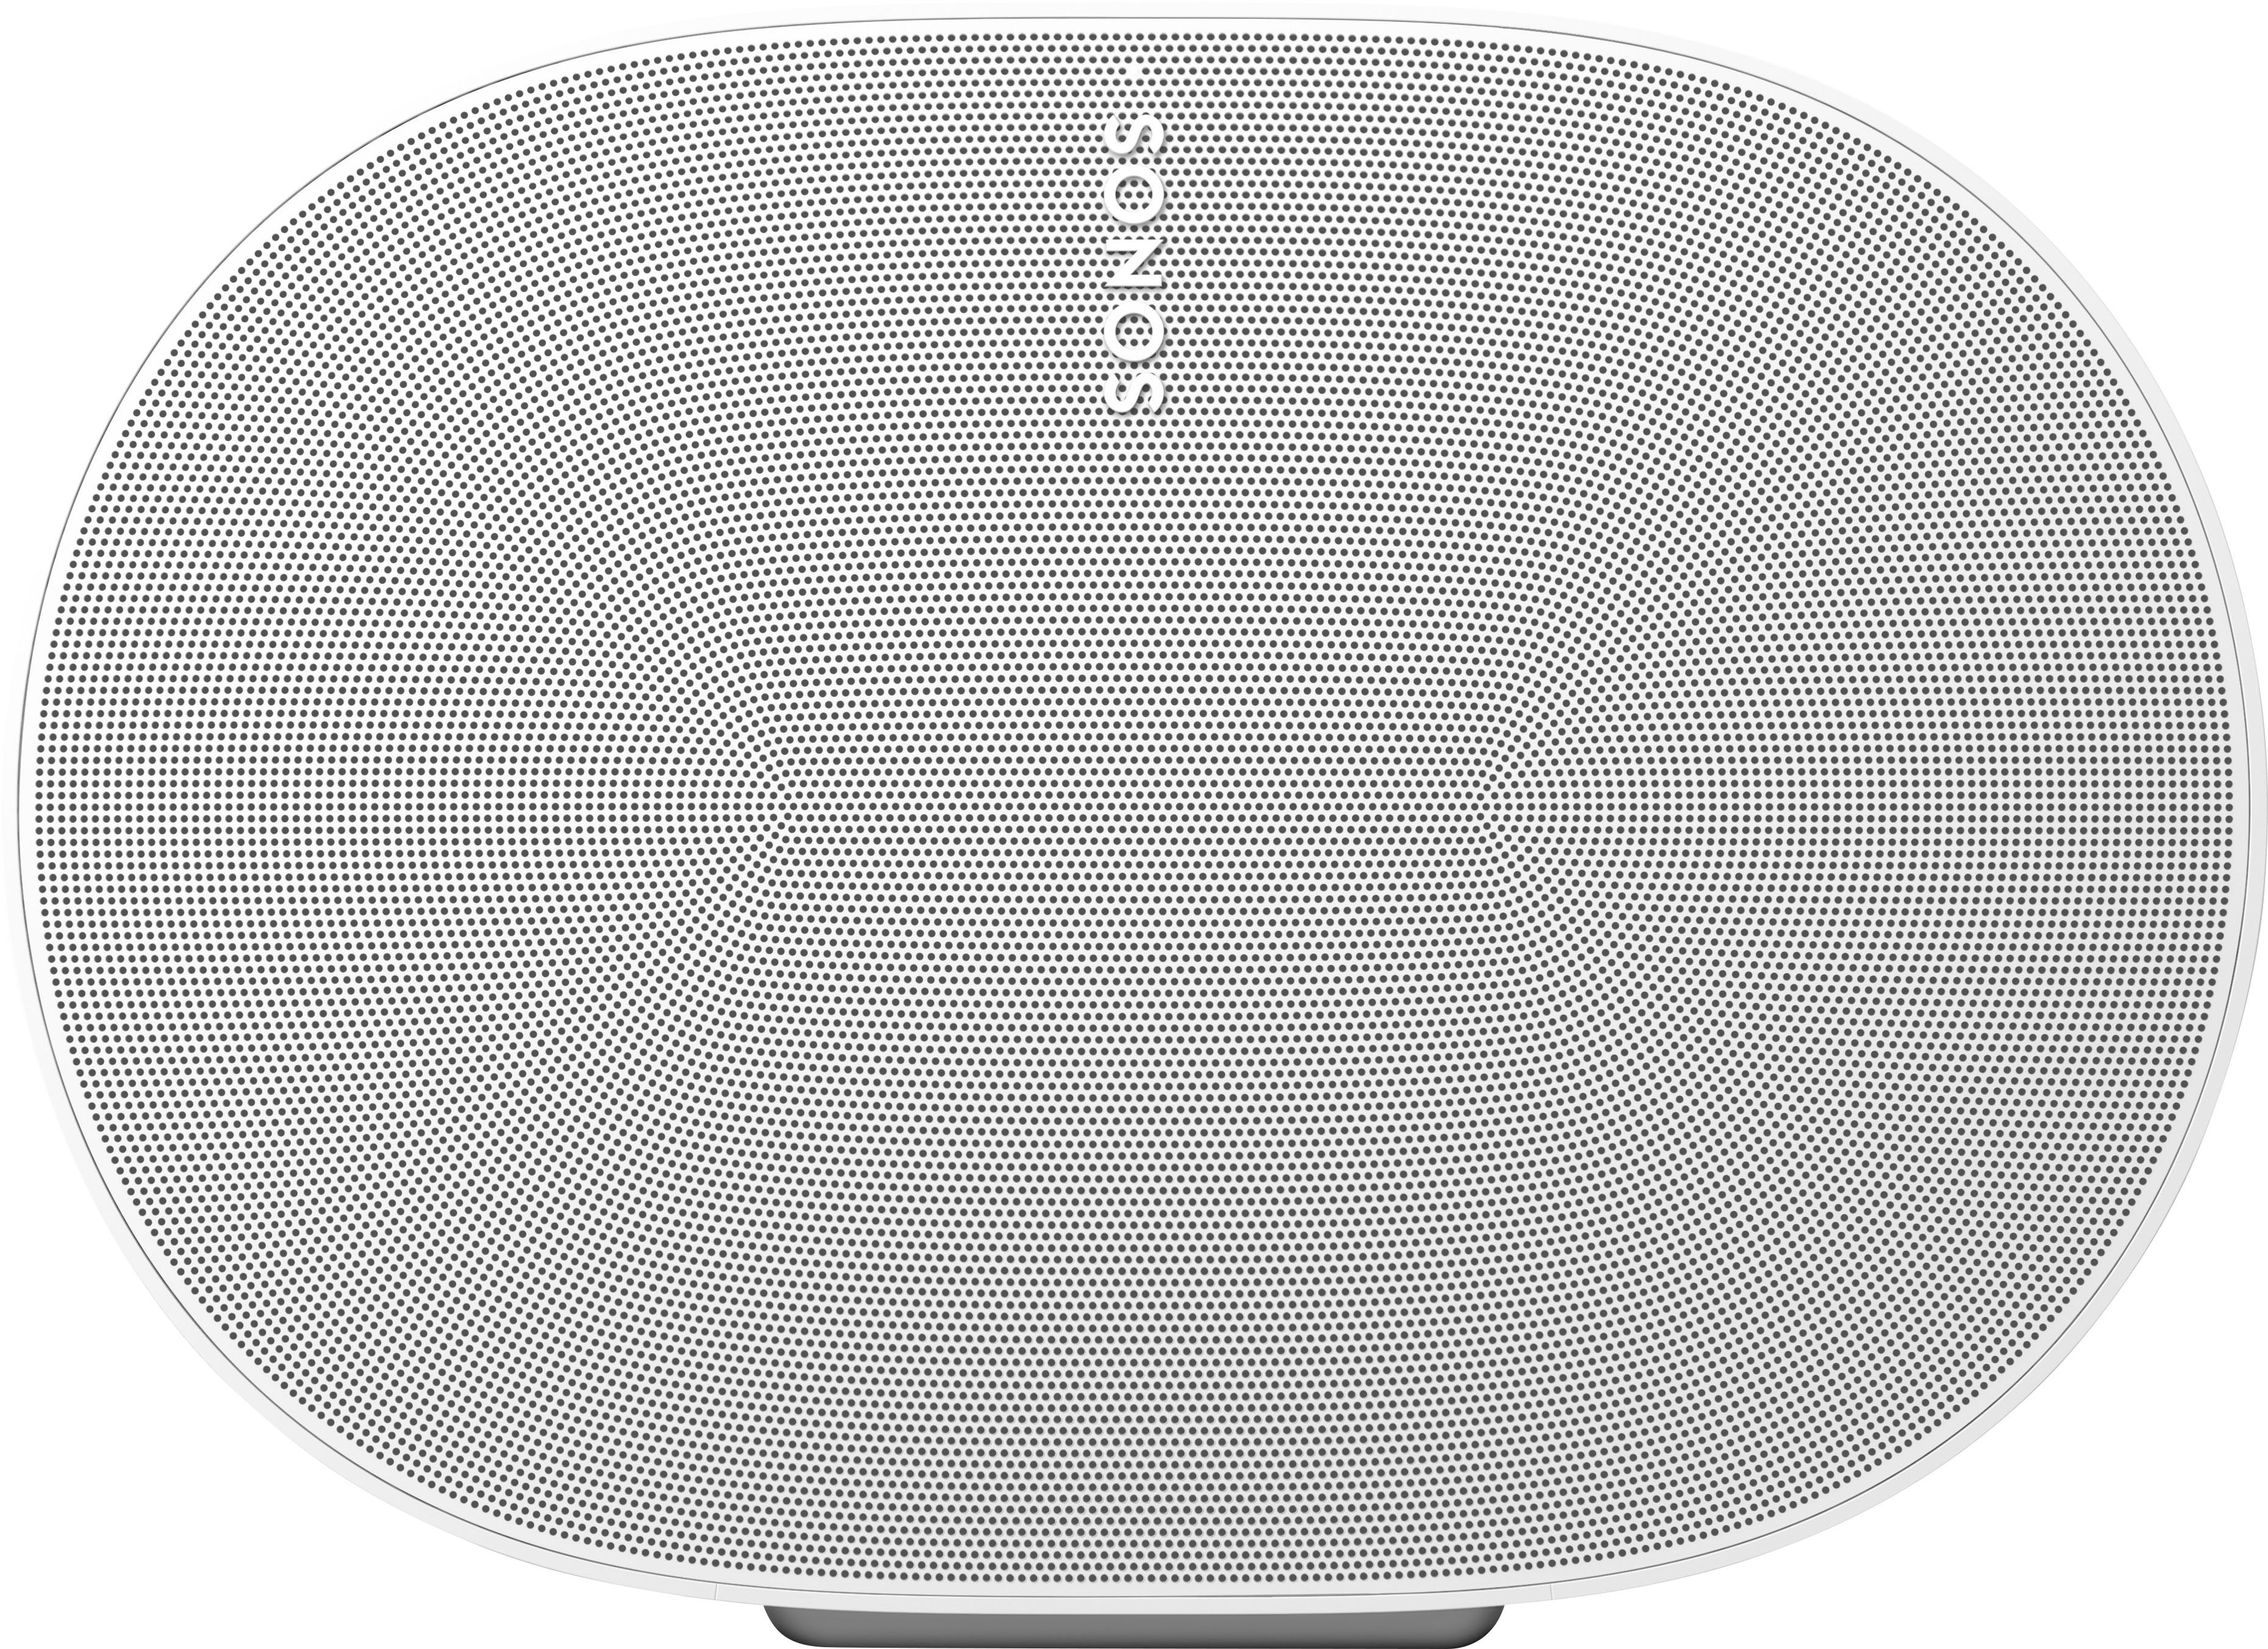 Angle View: Sonos - Era 300 Speaker (Each) - White